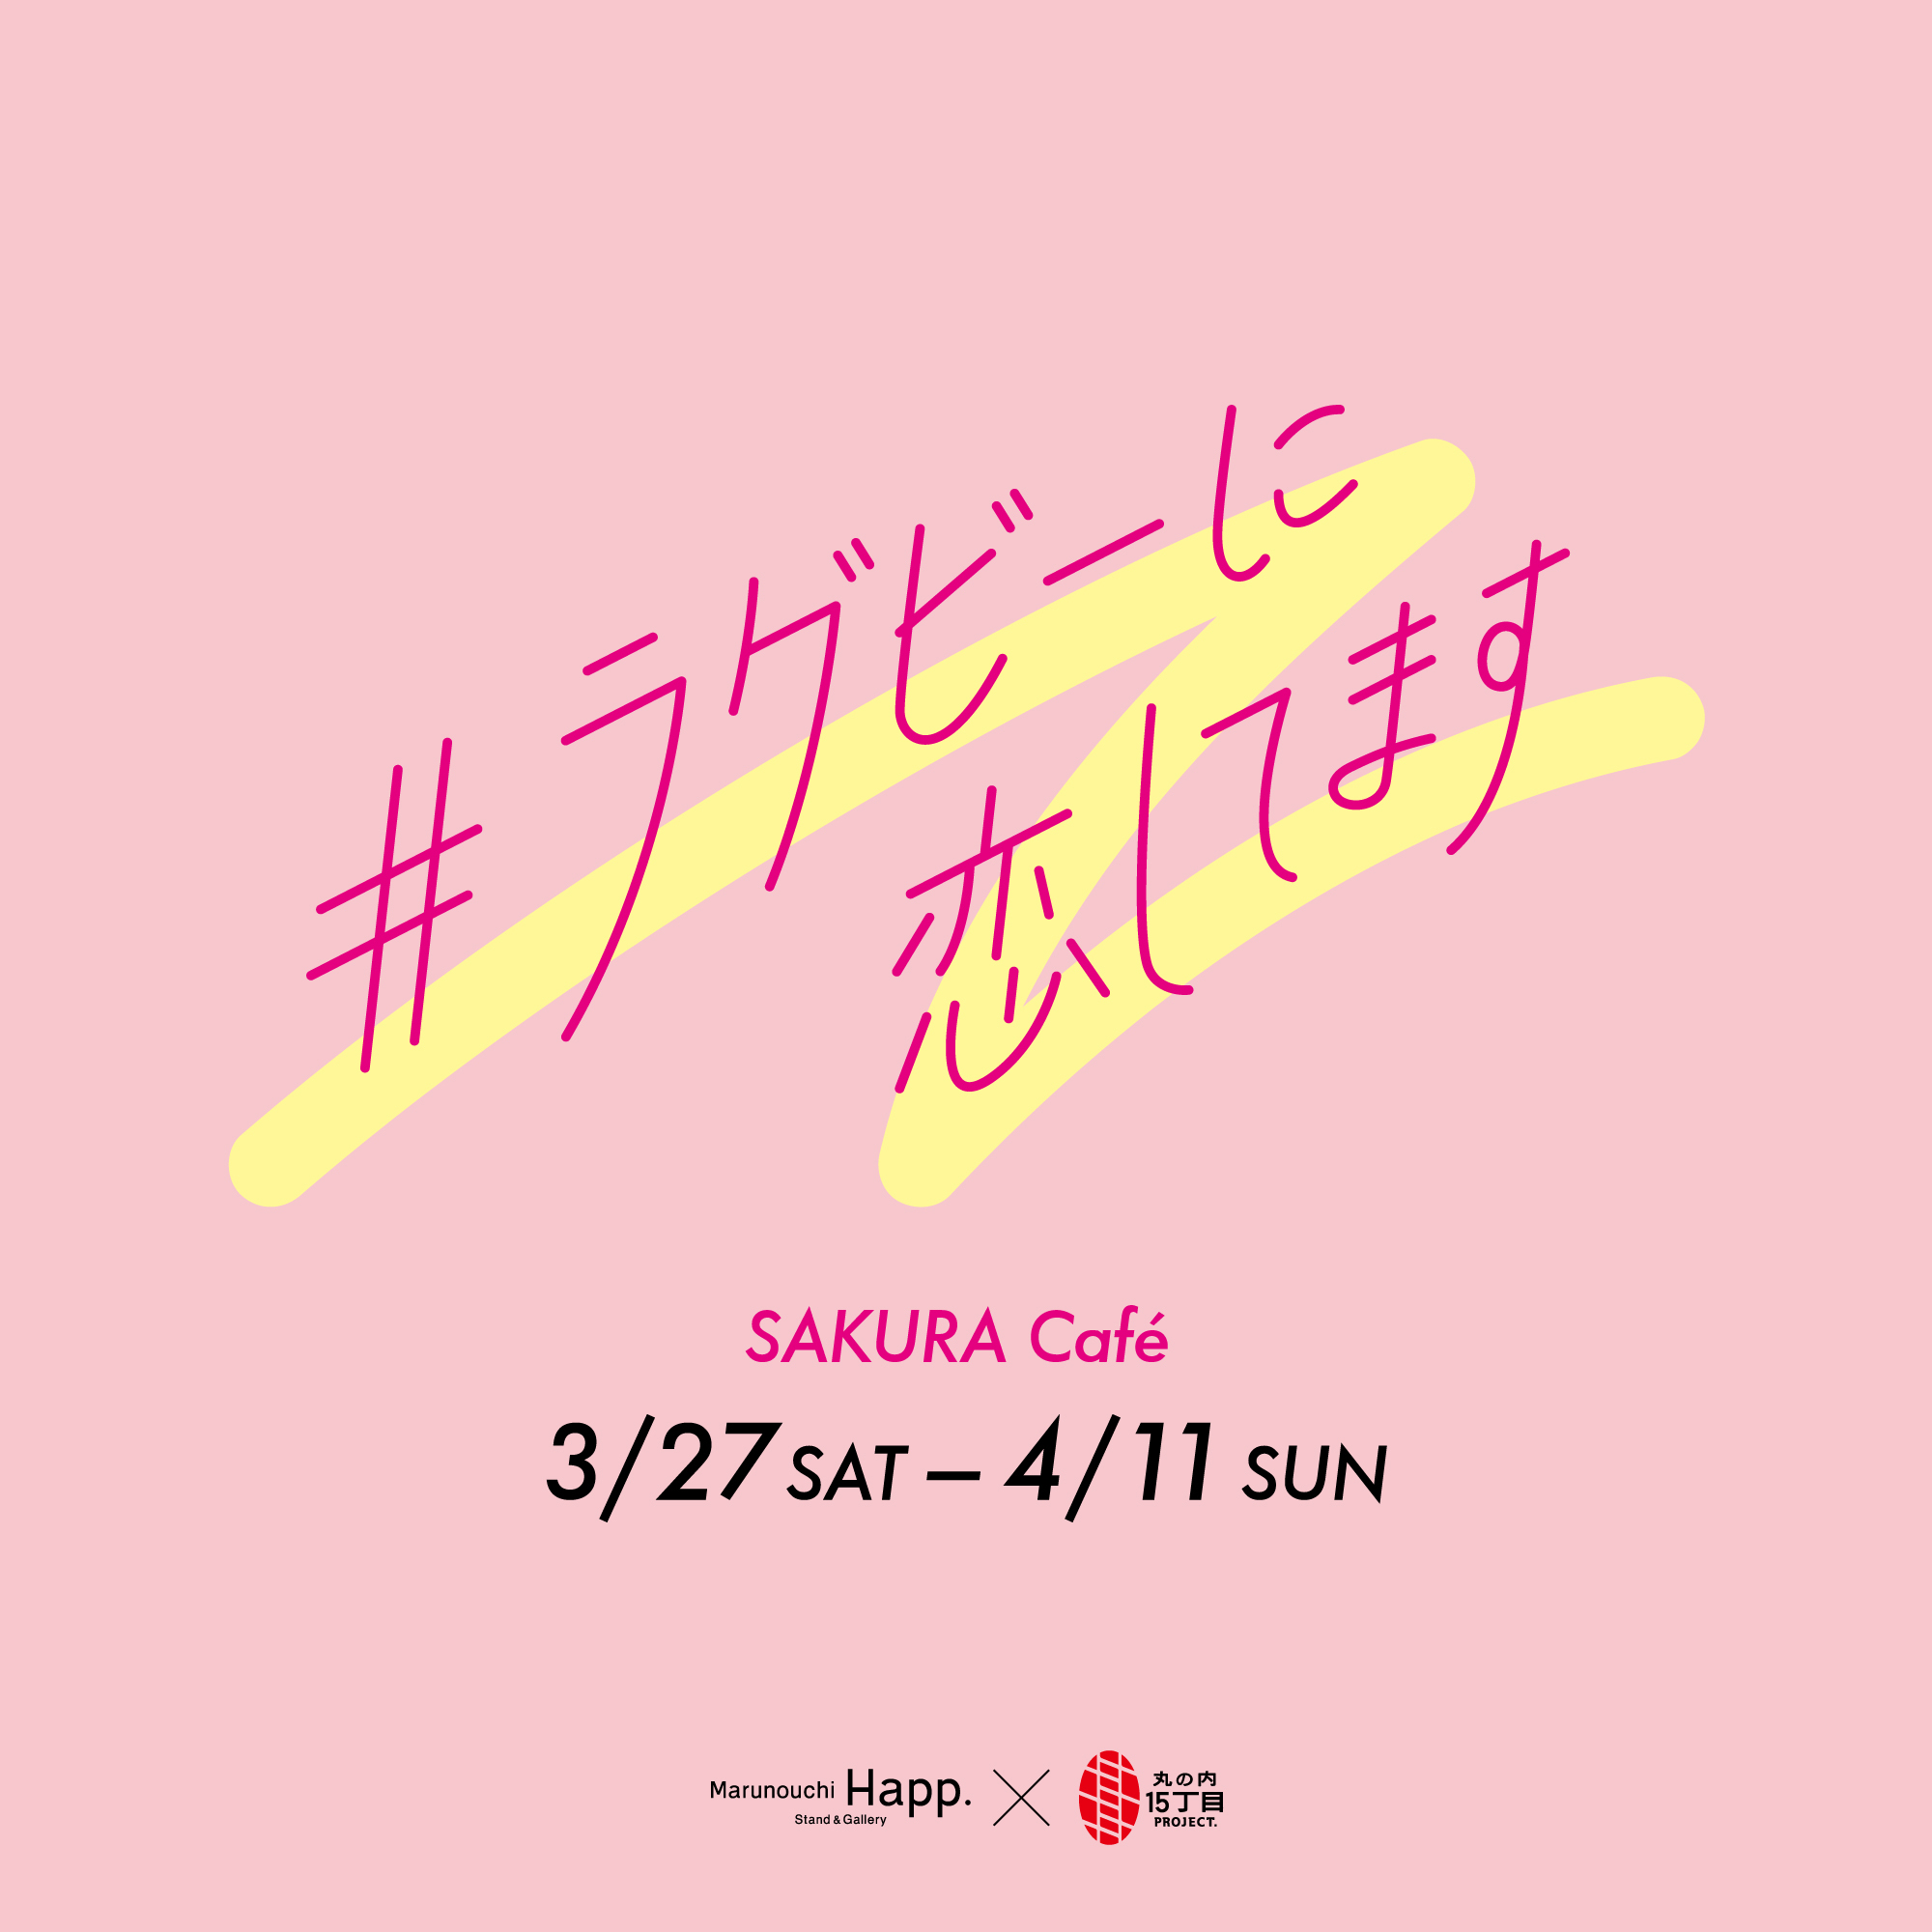 春を感じる女子ラグビー選手とのコラボカフェが遂にOPEN！3/27(土)〜4/11(日)SAKURA Cafe #ラグビーに恋してます 開催！